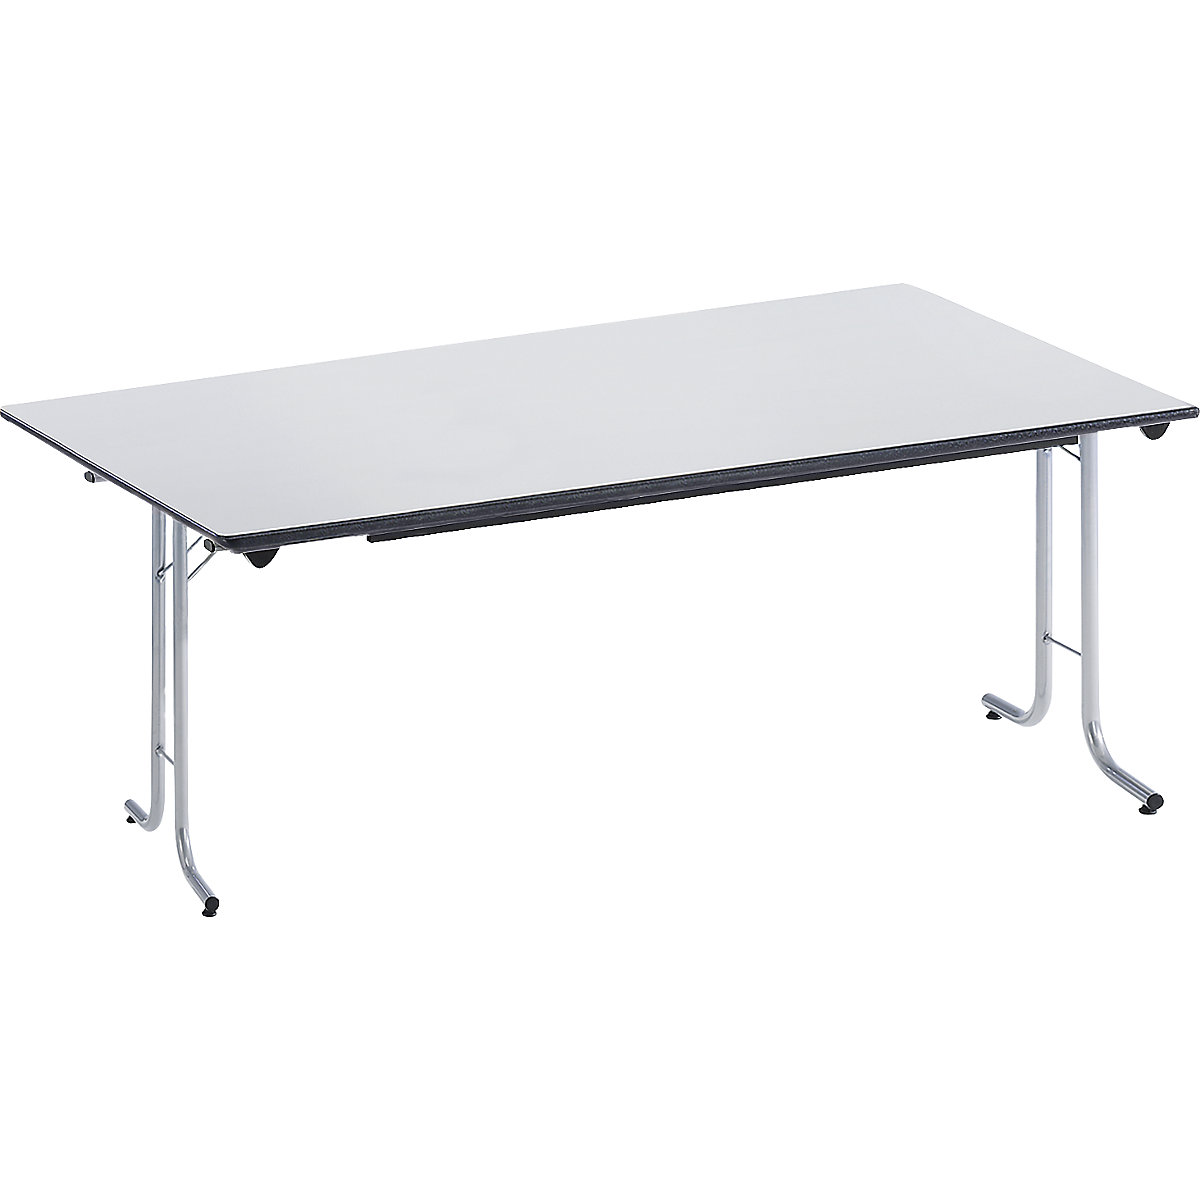 Inklapbare tafel, met afgeronde randen, tafelpoten van staalbuis, bladvorm rechthoekig, 1600 x 800 mm, frame aluminiumkleurig, blad lichtgrijs-11